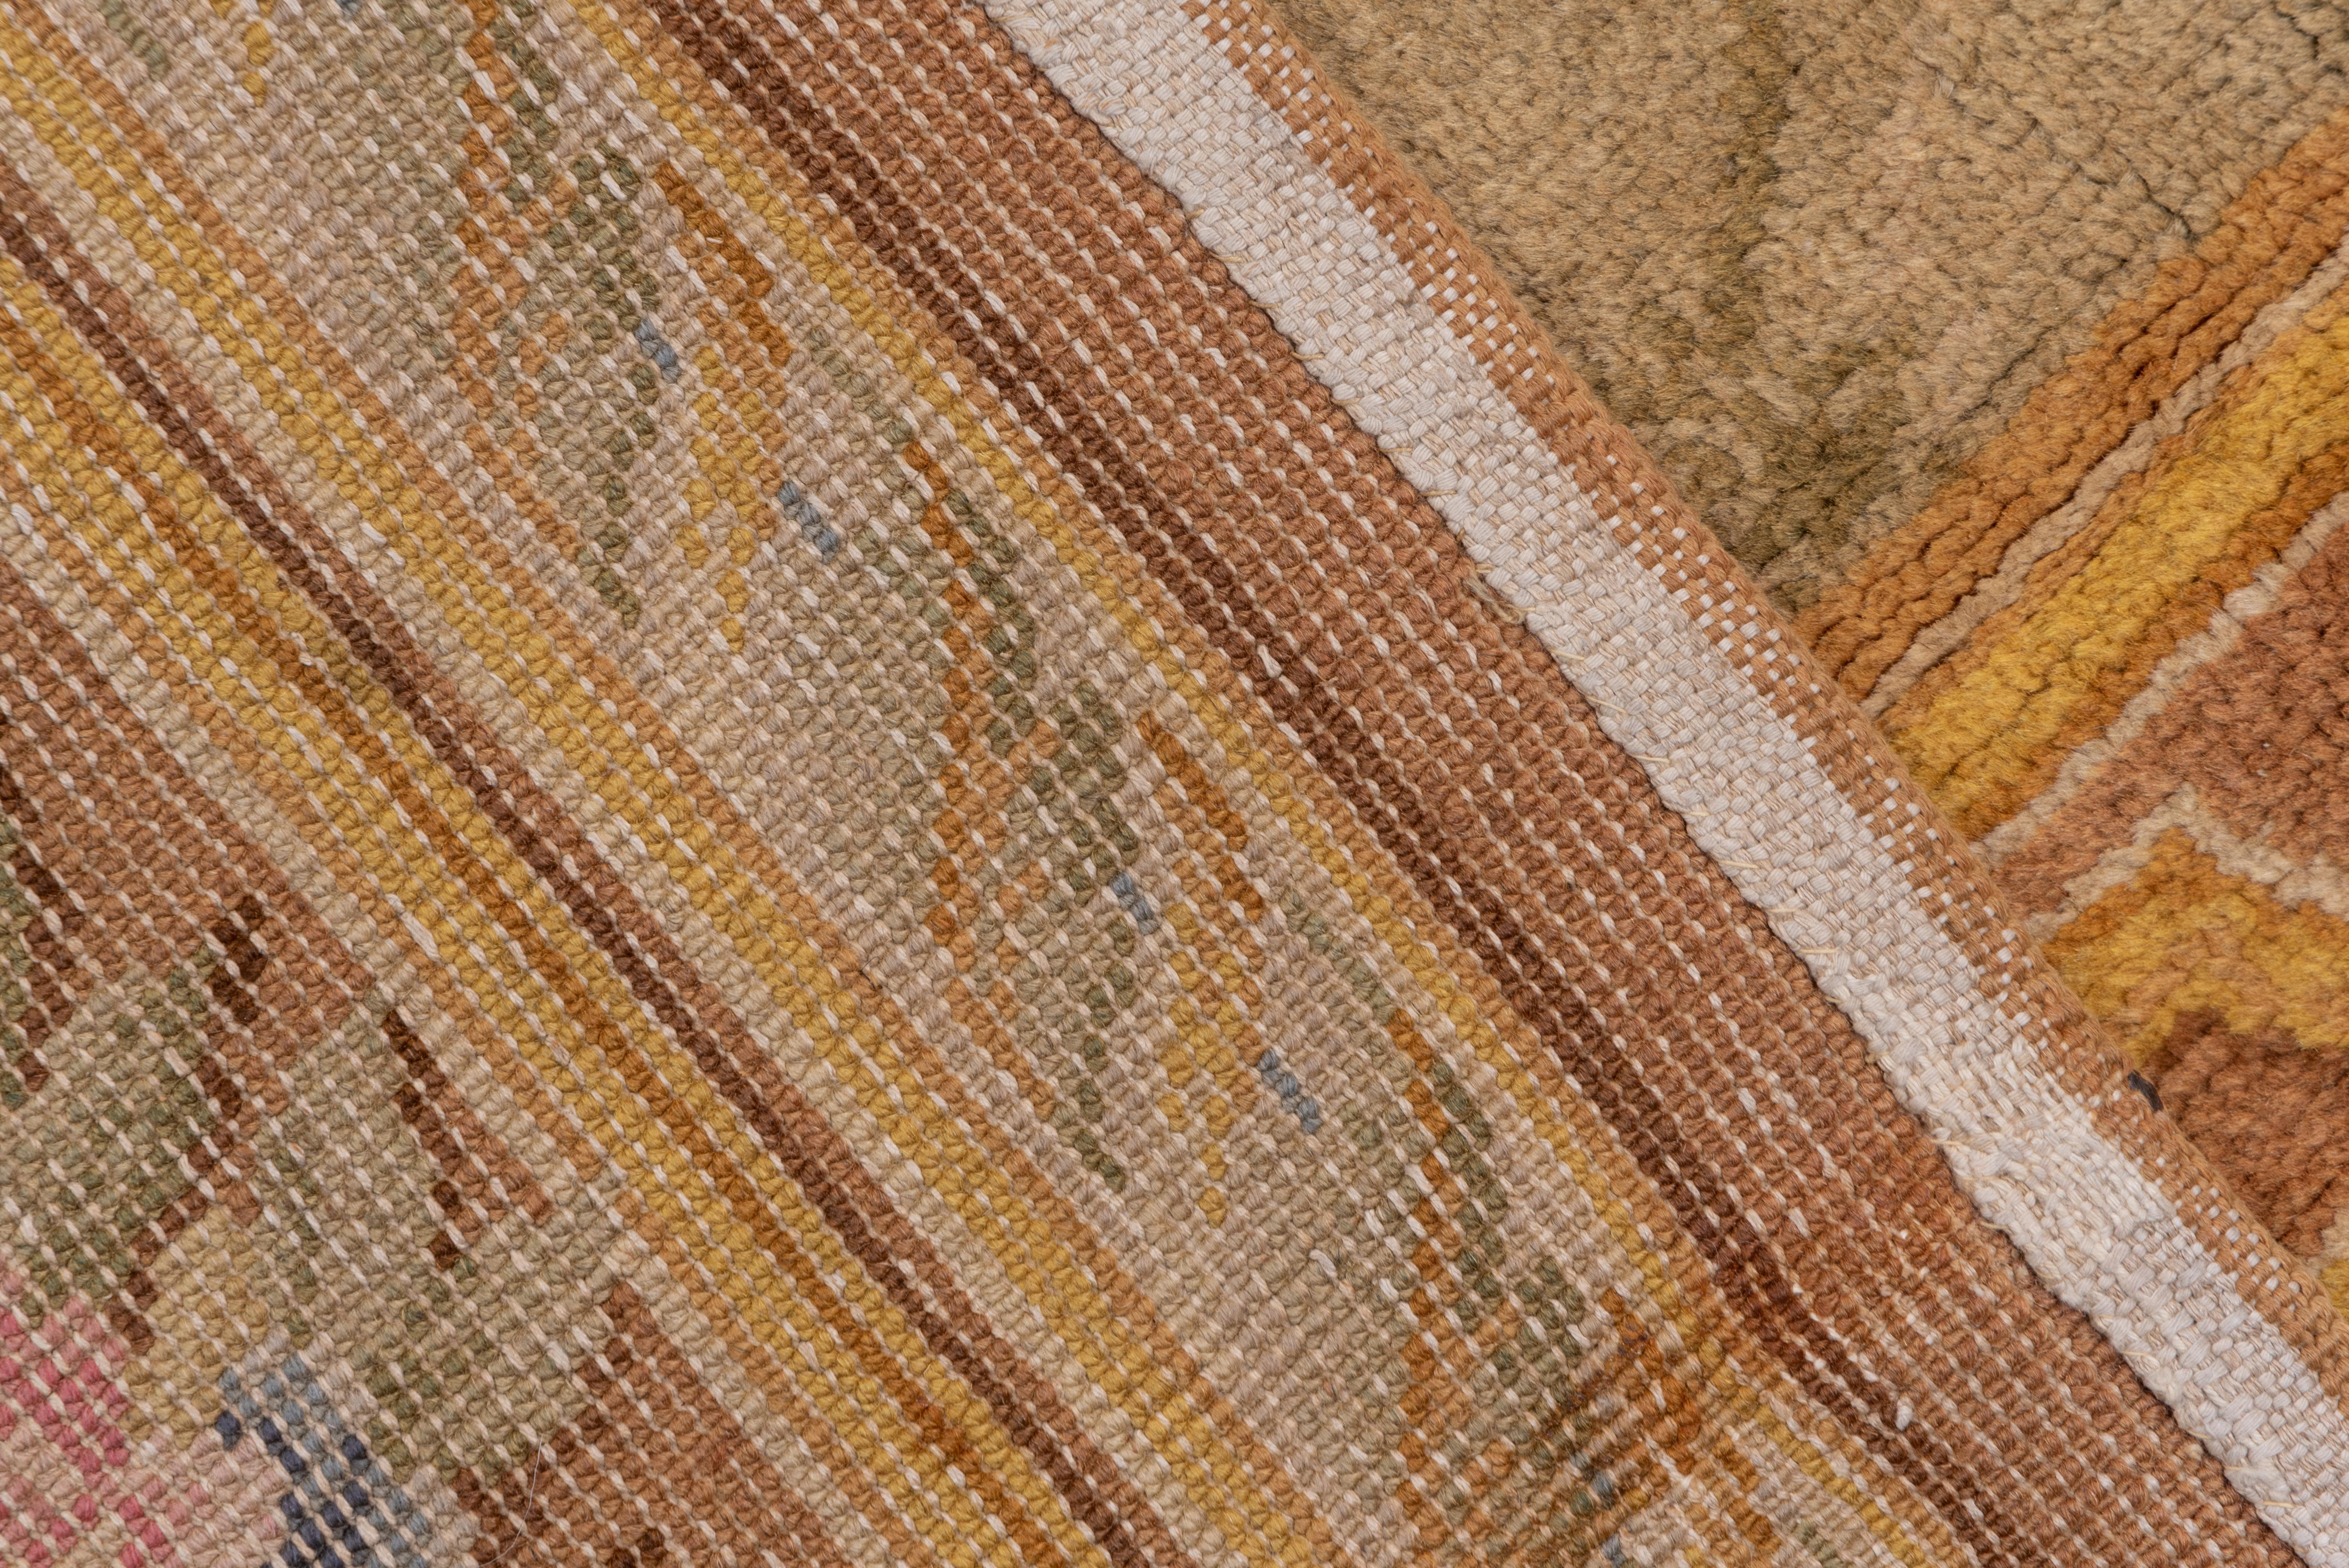 Ce tapis long, grossièrement tissé, présente un champ beige seafoam avec un motif ouvert de treillis de diamants, dans une bordure brune avec un travail de sangle en trompe l'oeil formant des cartouches enfermant des bouquets. Un tapis massif pour